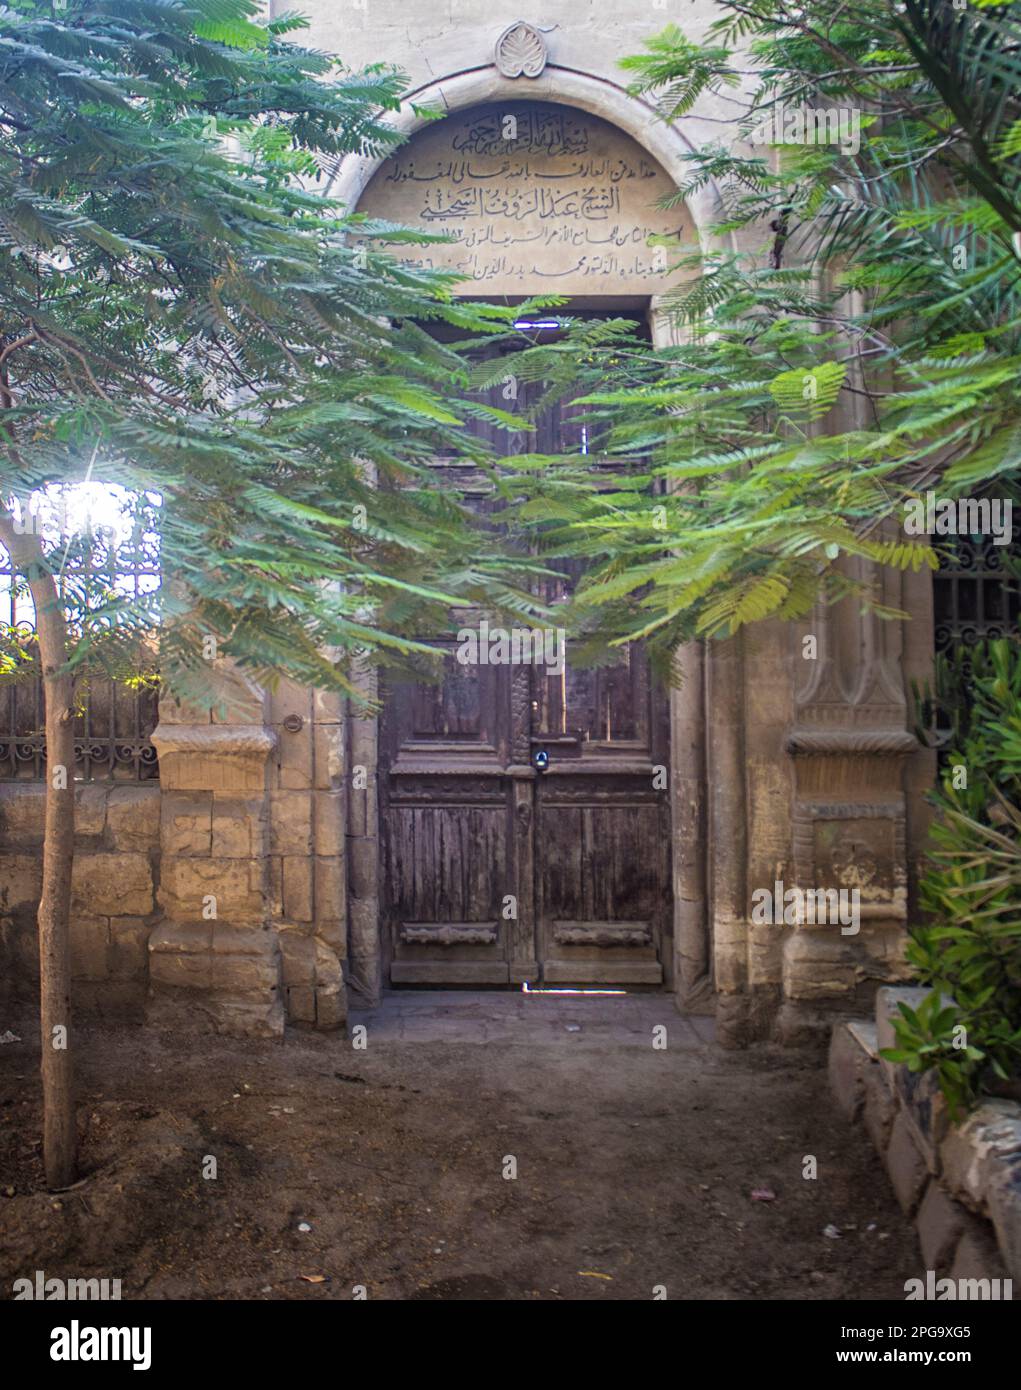 Entrada a la tumba en la Ciudad de los Muertos, donde la gente vive con sus parientes muertos. La Ciudad de los Muertos, o Necrópolis de El Cairo, también conocida como el Qarafa es una serie de vastas necrópolis y cementerios de la era islámica en El Cairo, Egipto. Foto de stock